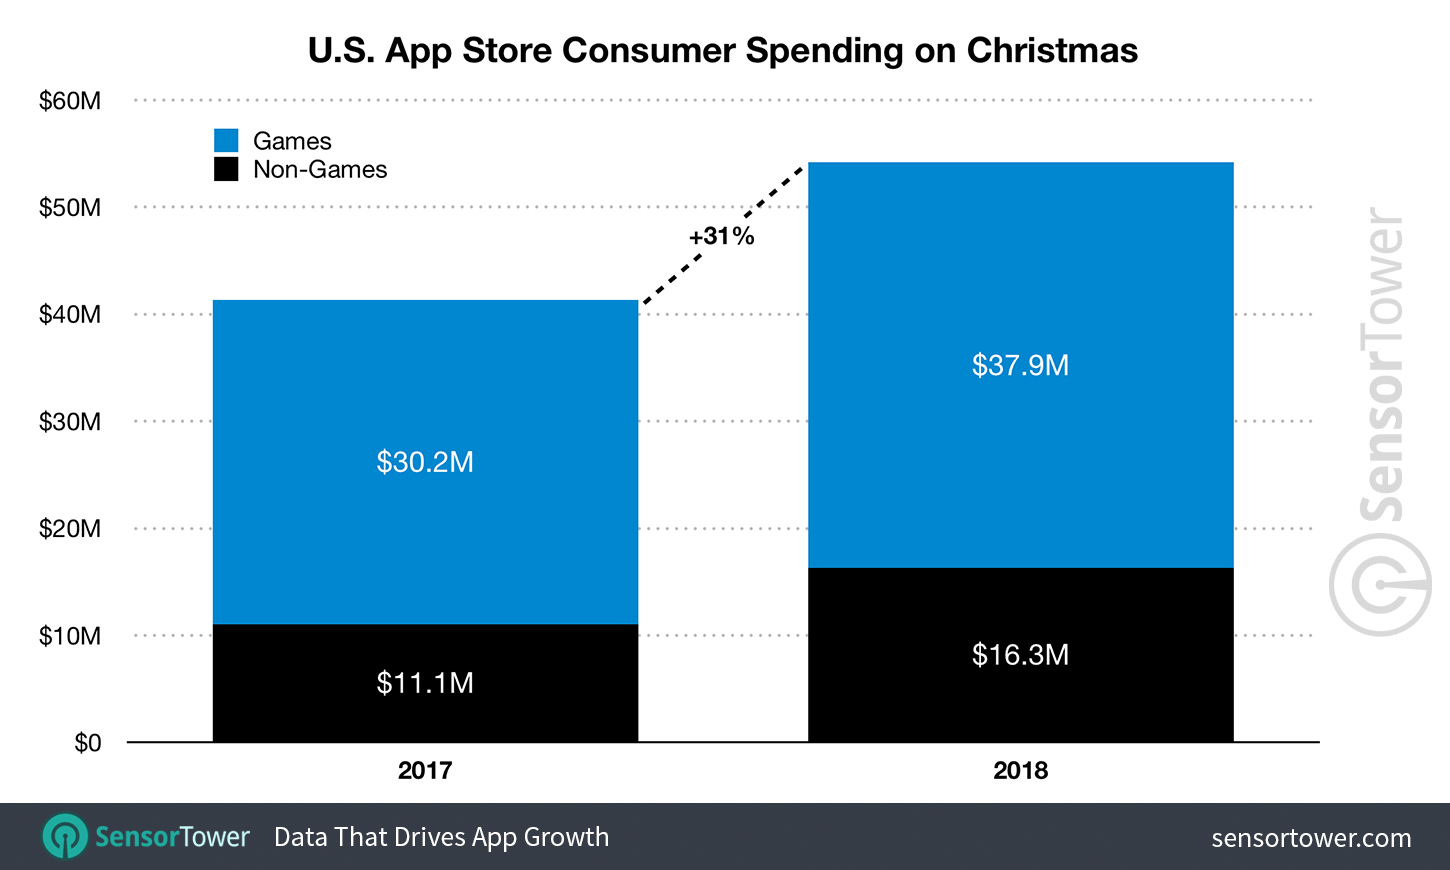 U.S. App Store Revenue for Christmas 2017 and 2018